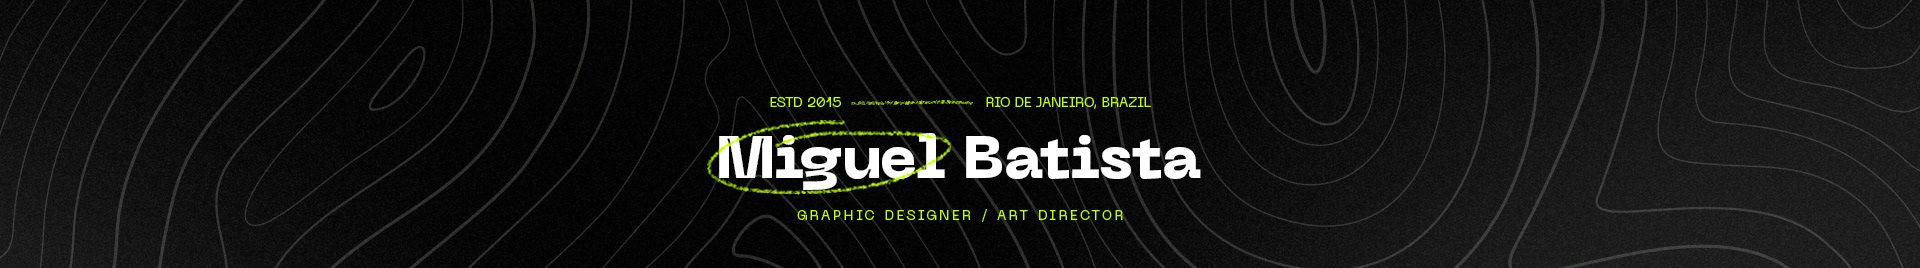 Miguel Batista's profile banner